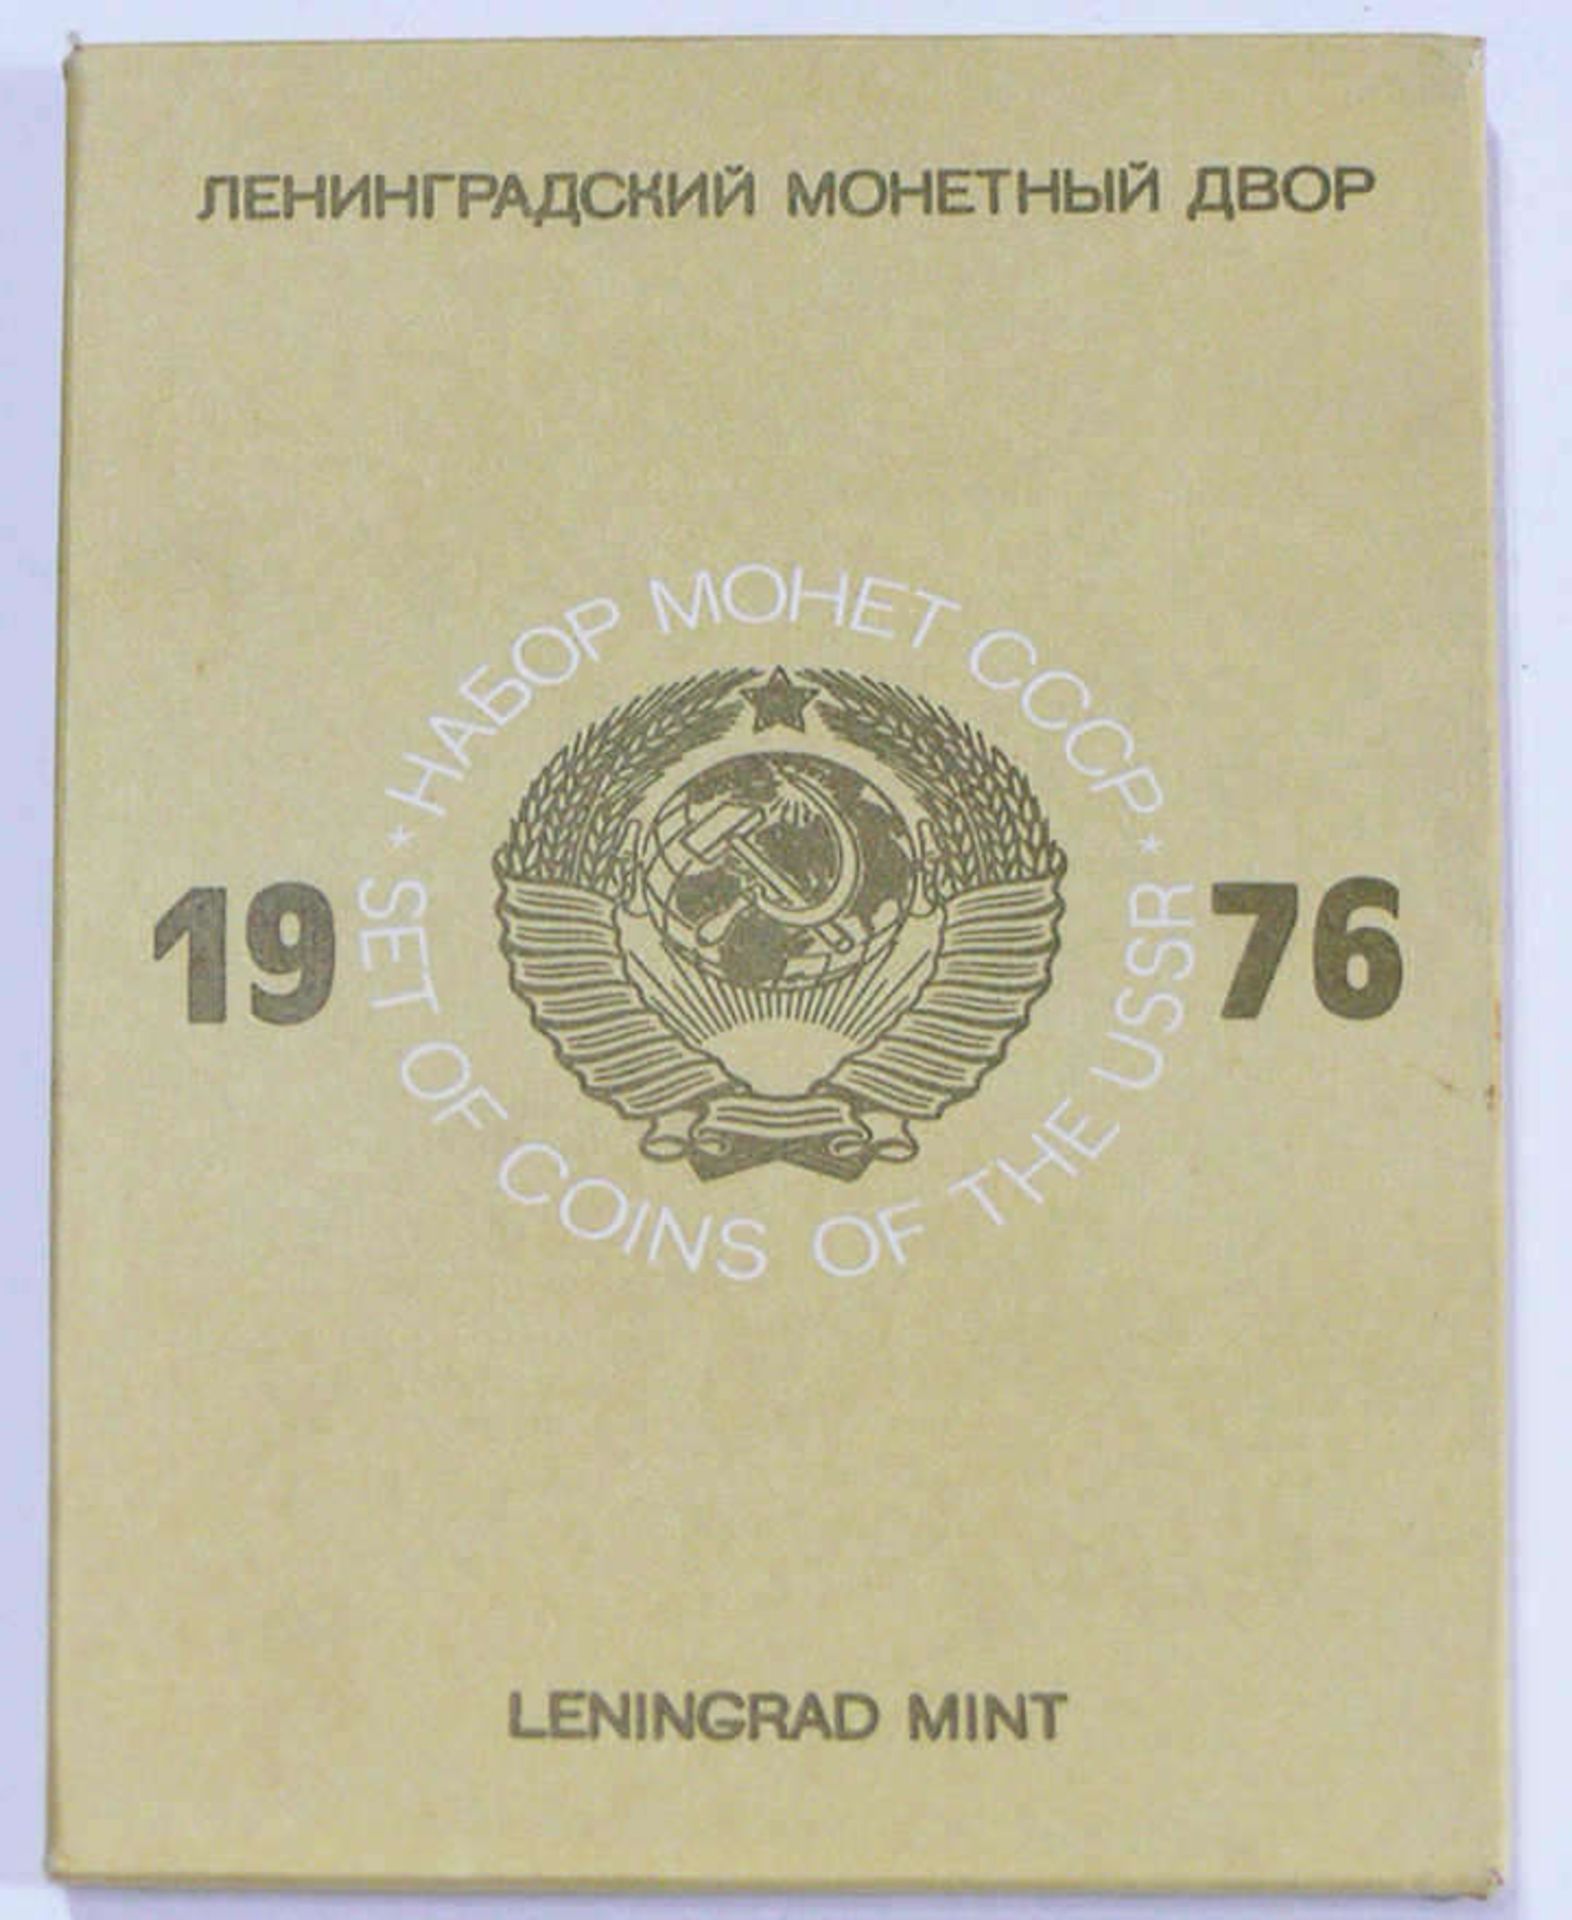 UdSSR 1976, Kursmünzsatz Prägestätte Leningrad. Erhaltung: stgl. In OVP. USSR 1976 coinset mint - Image 3 of 4